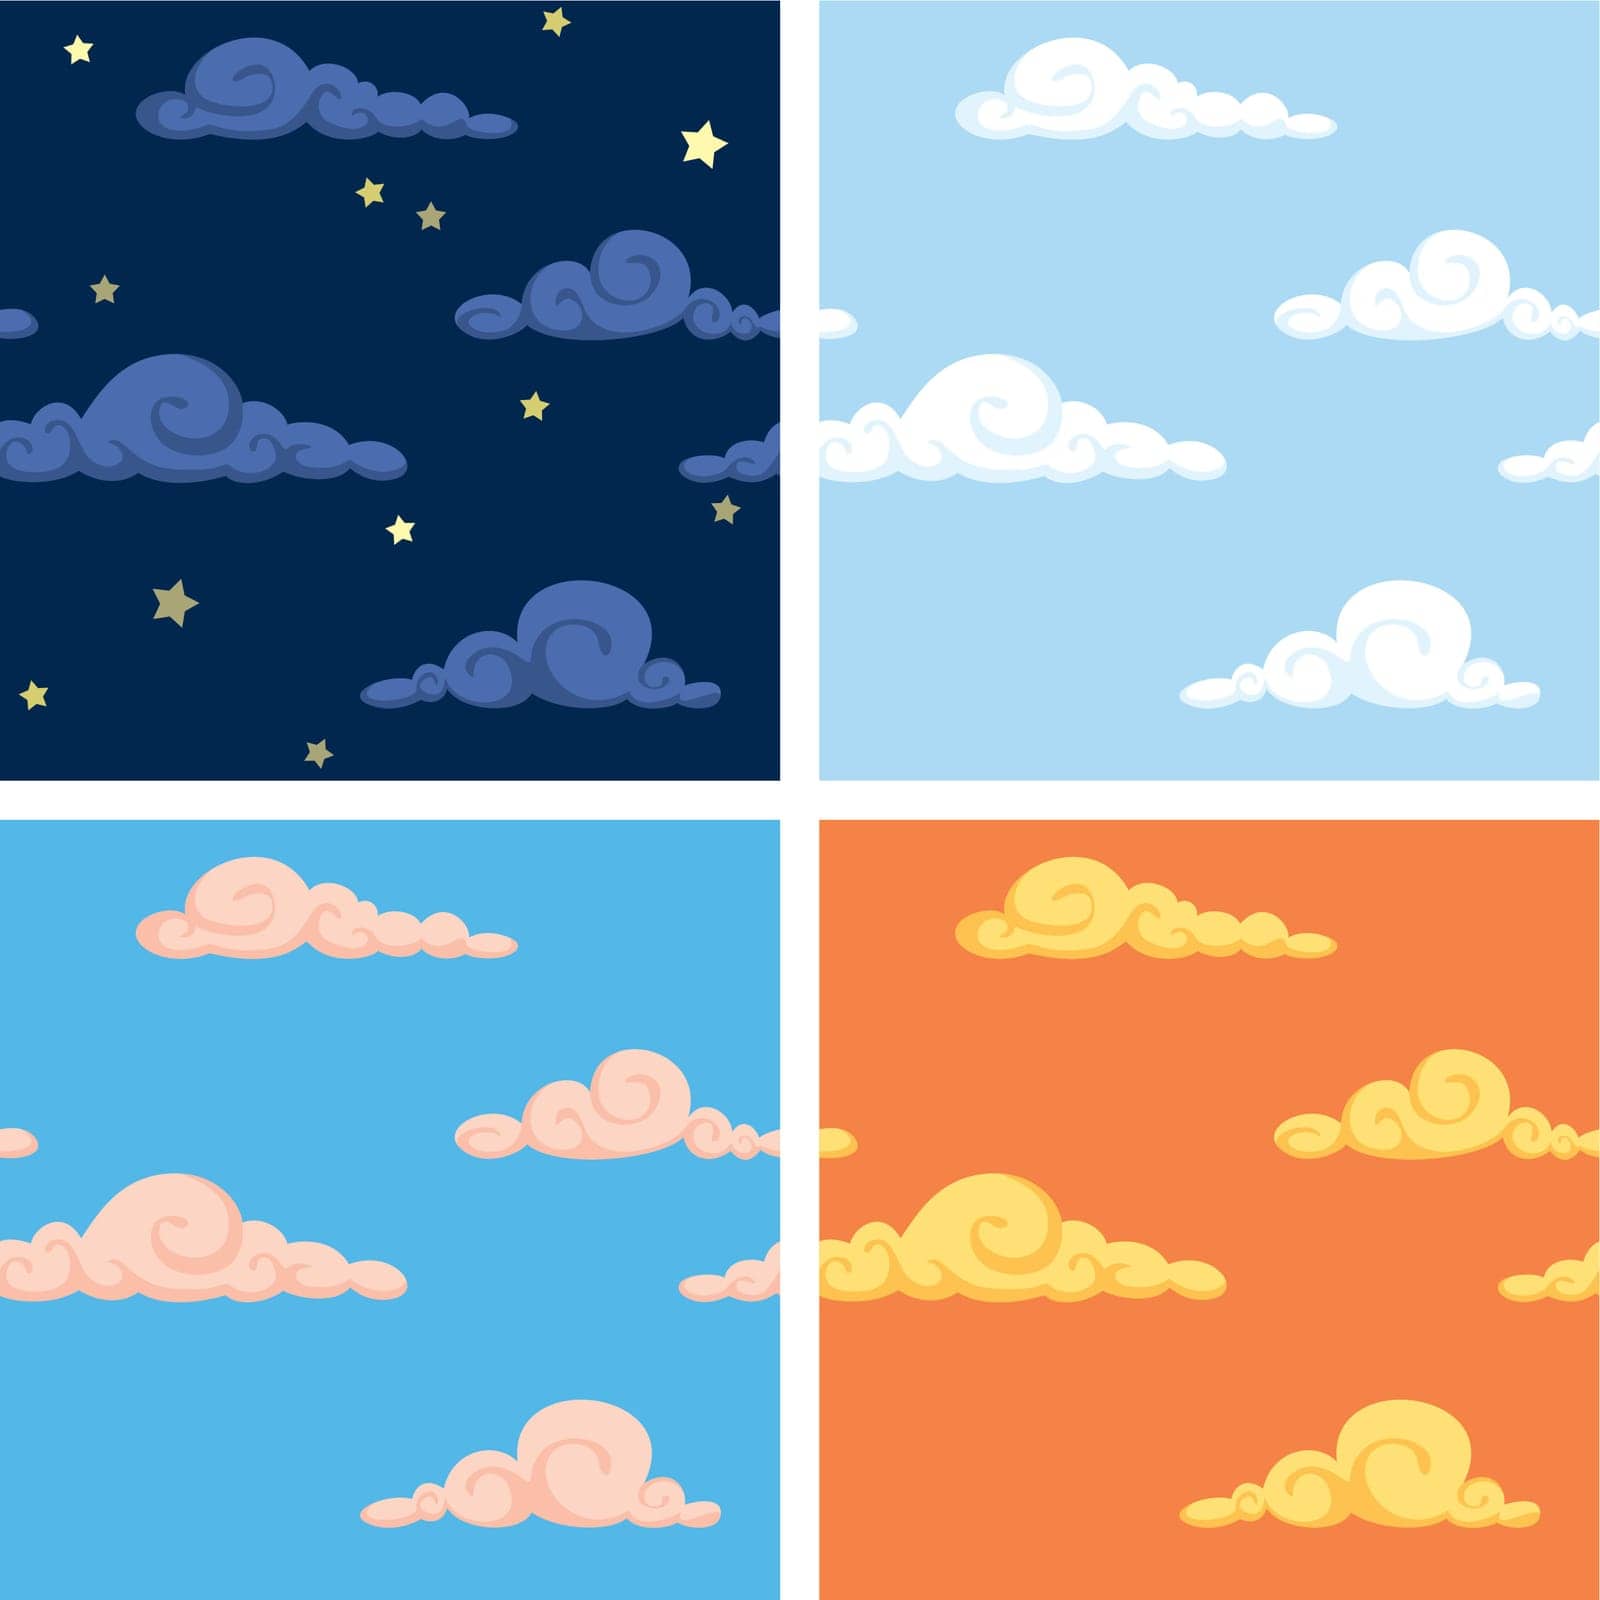 Sky Patterns by Malchev